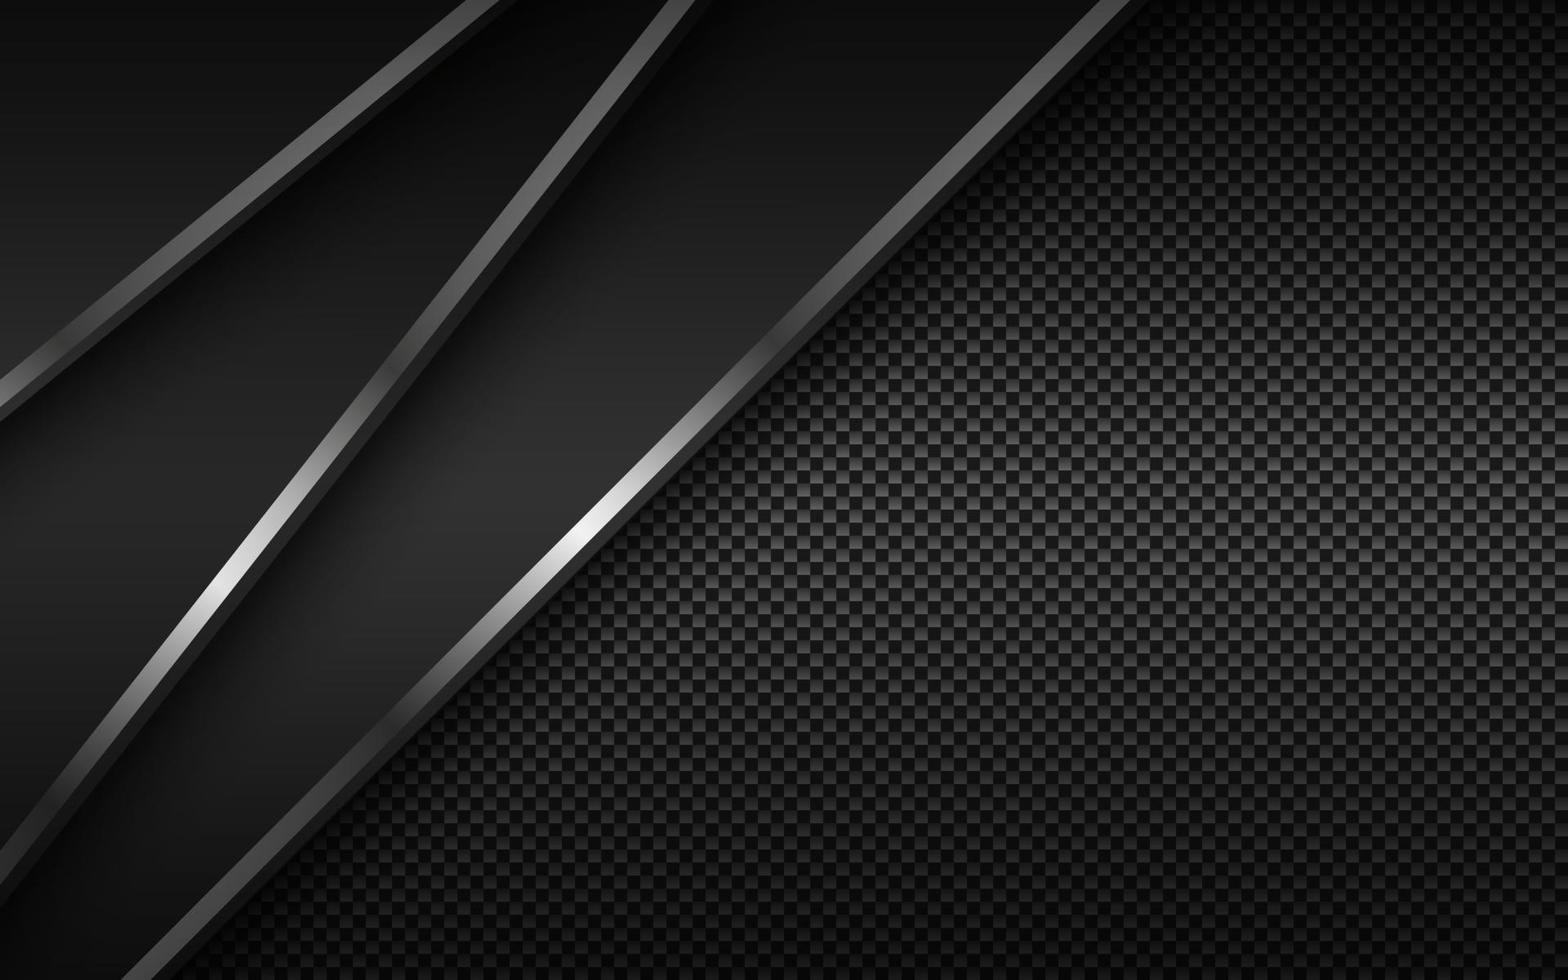 fond de matériau moderne noir avec des lignes argentées diagonales et une texture en fibre de carbone. conception pour votre entreprise. fond abstrait grand écran de vecteur